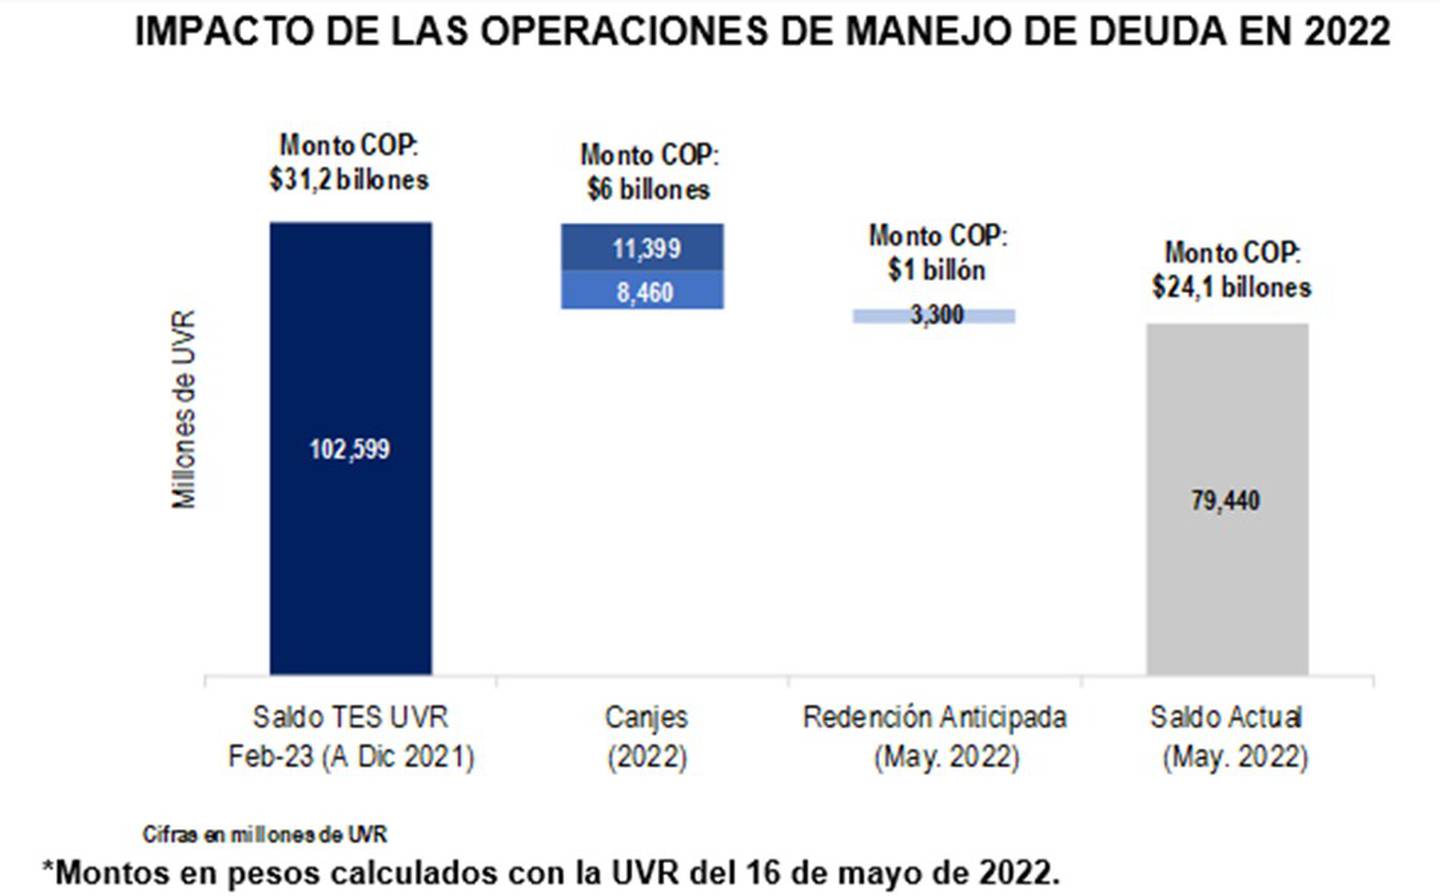 Impacto del manejo de deuda pública de Colombia en 2022dfd